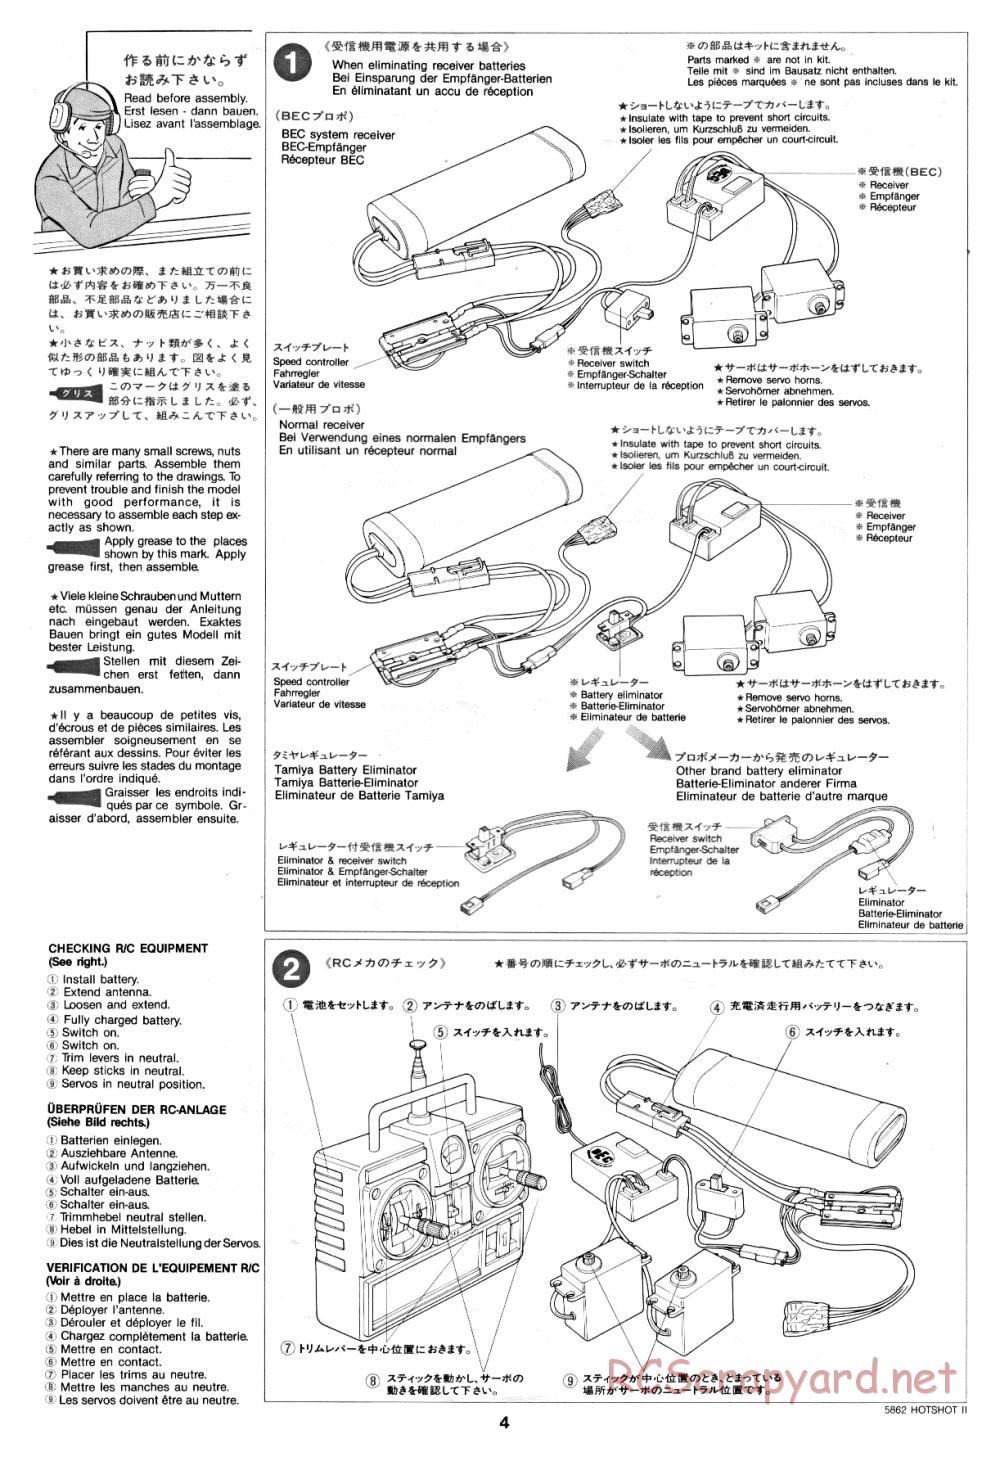 Tamiya - Hot-Shot II - 58062 - Manual - Page 4